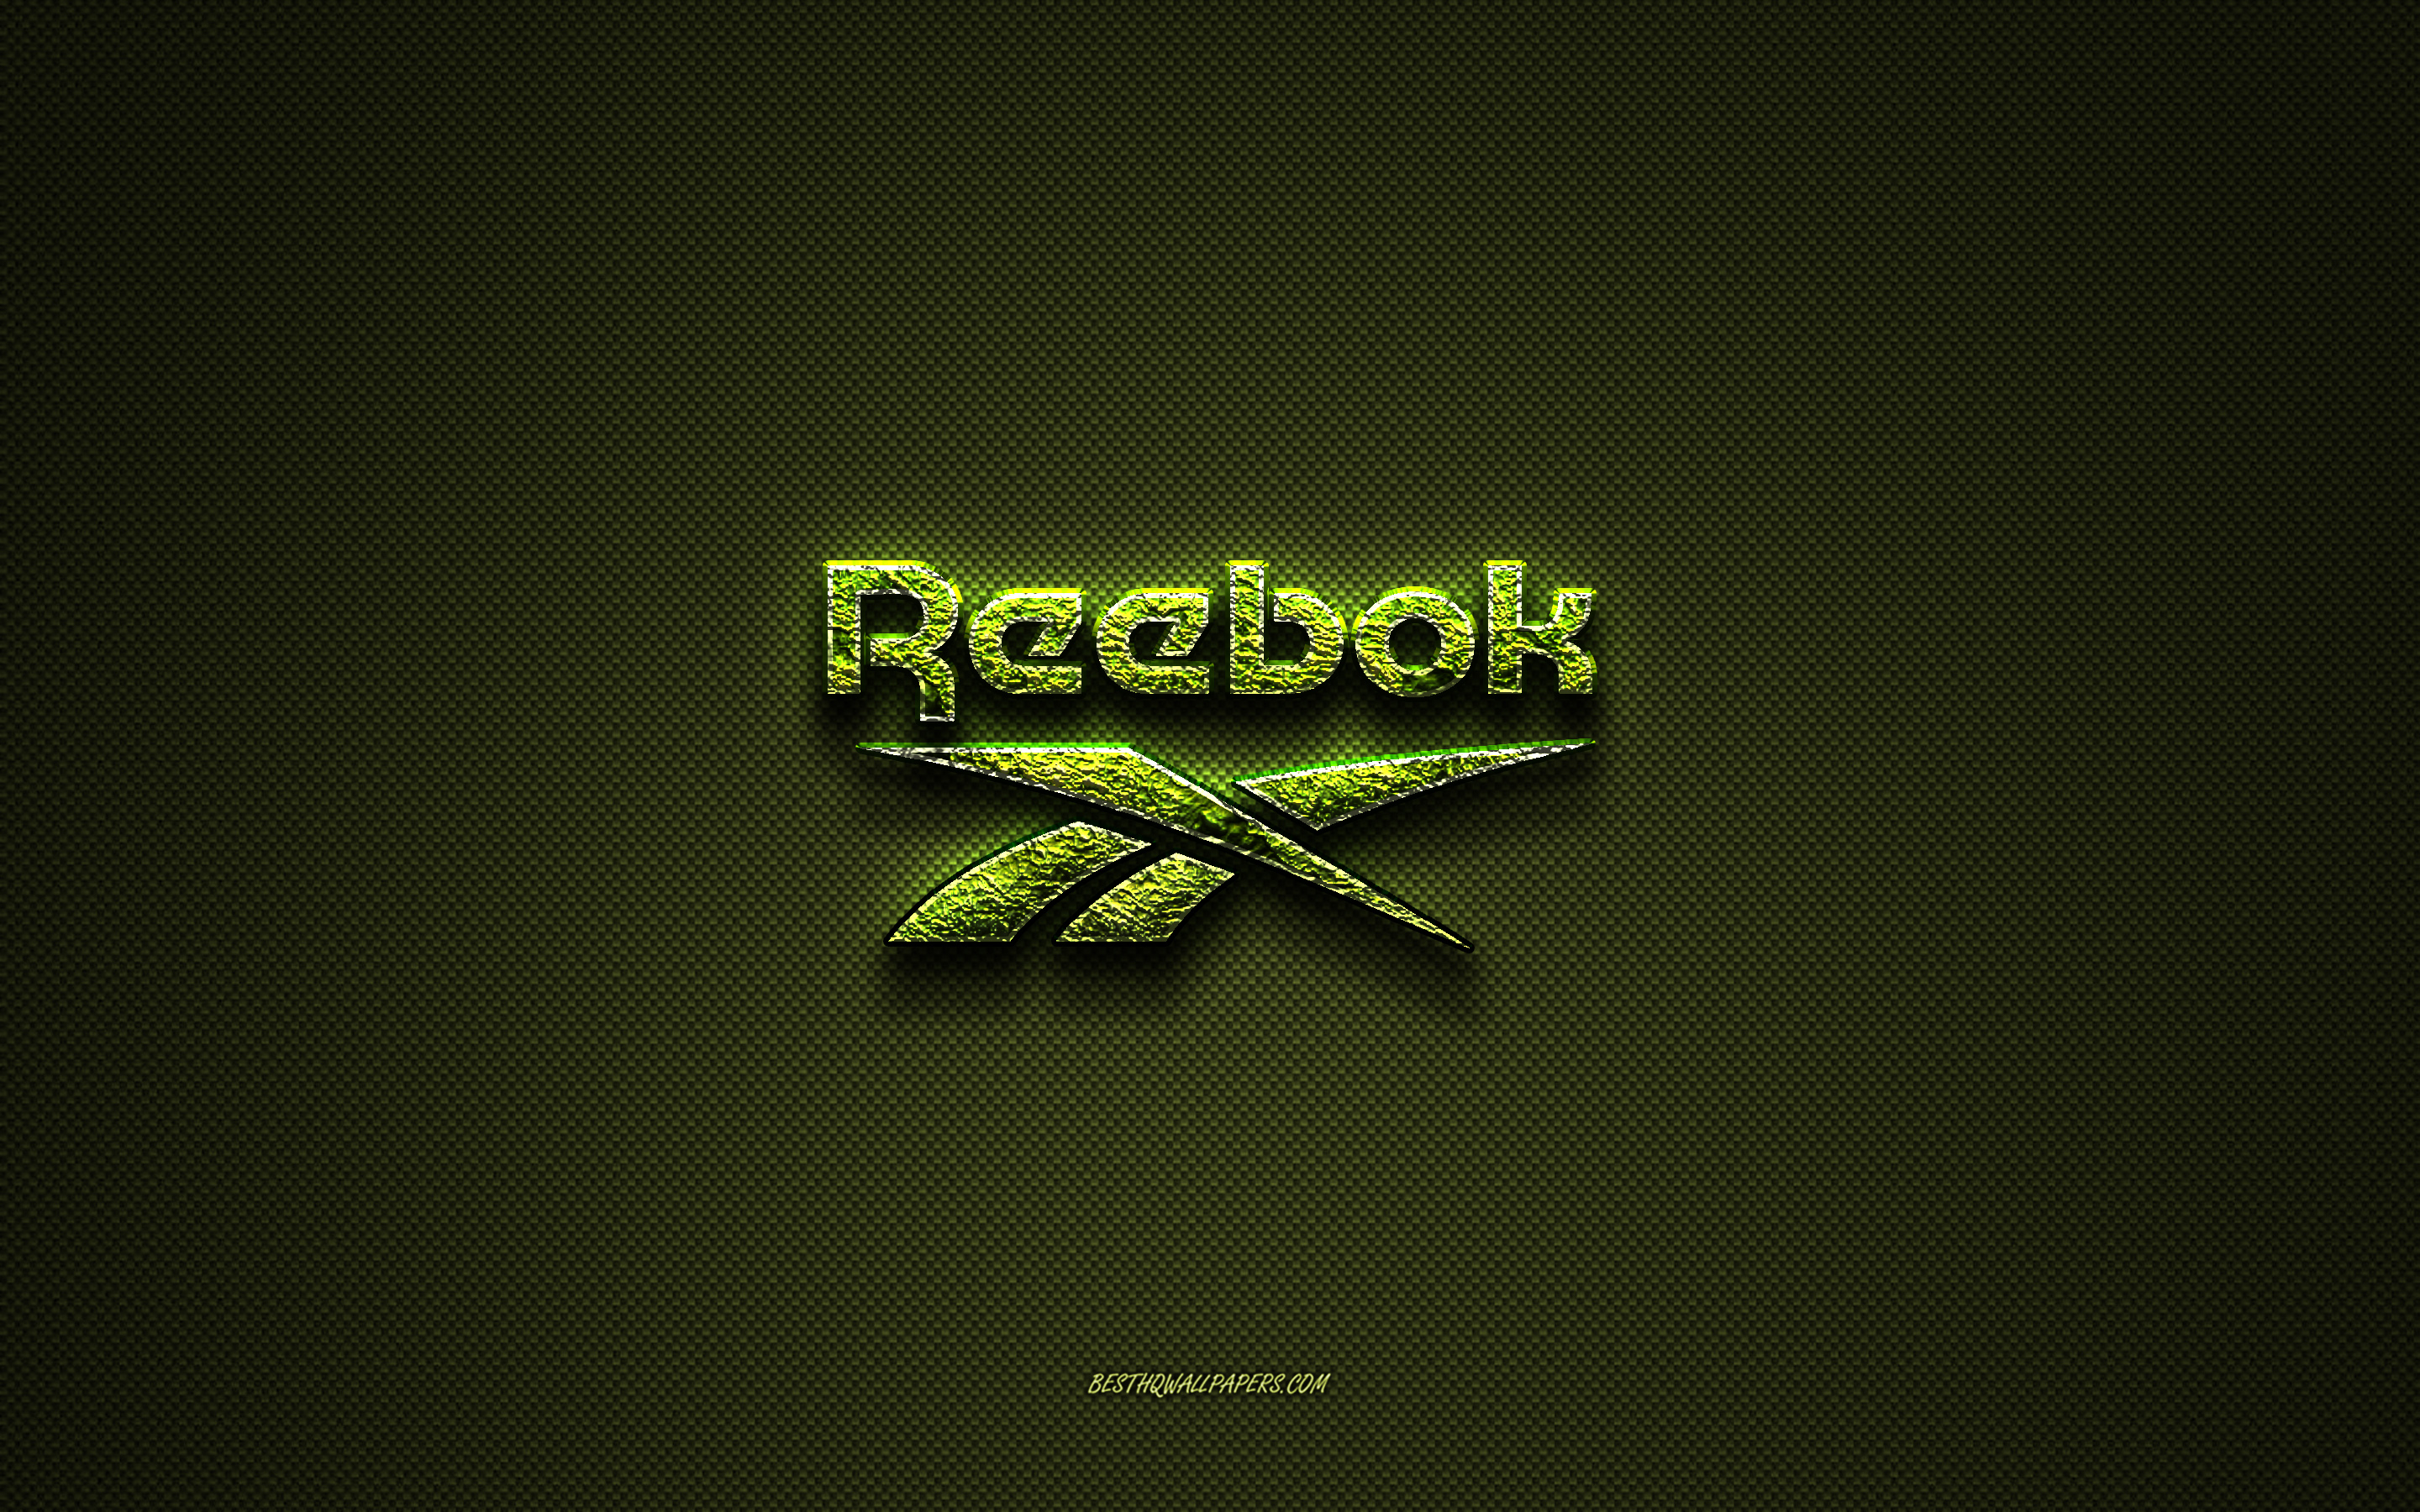 ダウンロード画像 リーボックのロゴ 緑の創造的なロゴ 花のアートのロゴ リーボックのエンブレム 緑の炭素繊維の質感 Reebok クリエイティブアート 画面の解像度 x1800 壁紙デスクトップ上